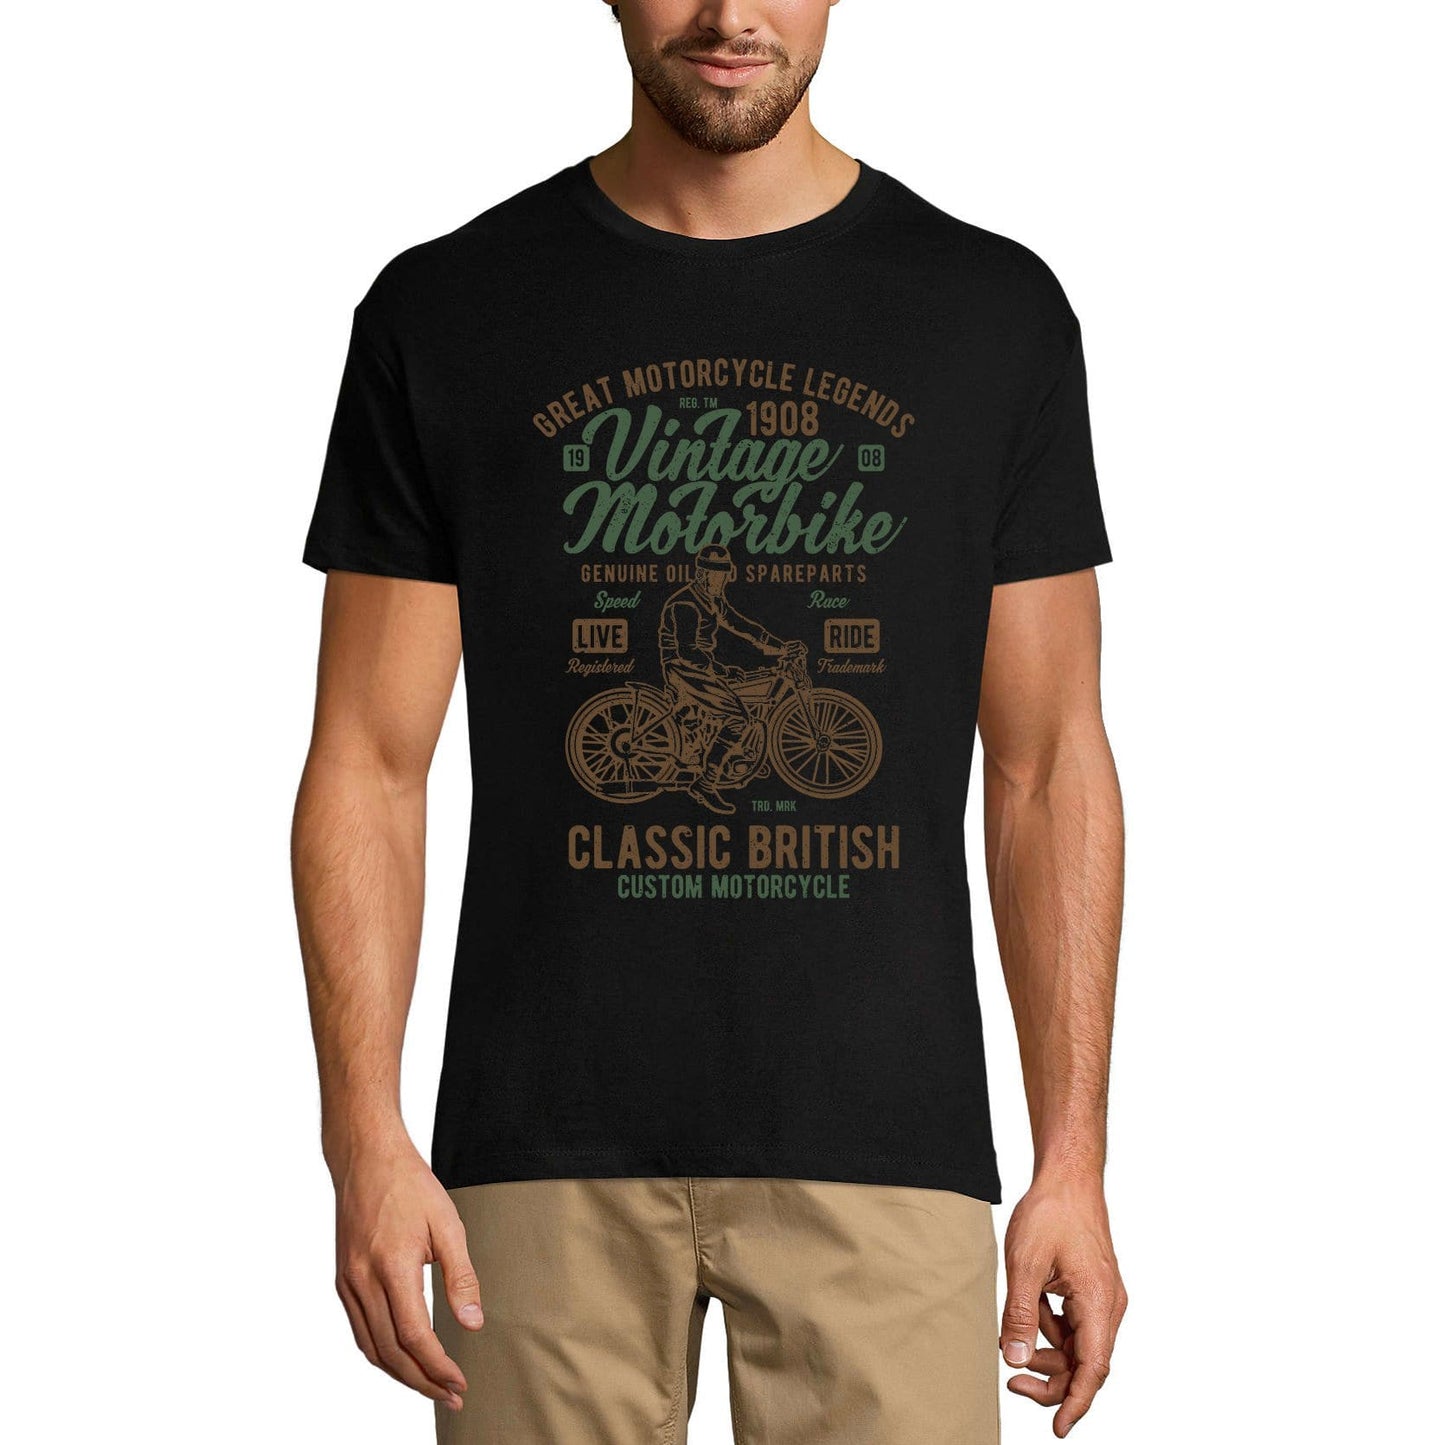 ULTRABASIC Men's T-Shirt Vintage Motorbike - Classic British Motorcycle Tee Shirt